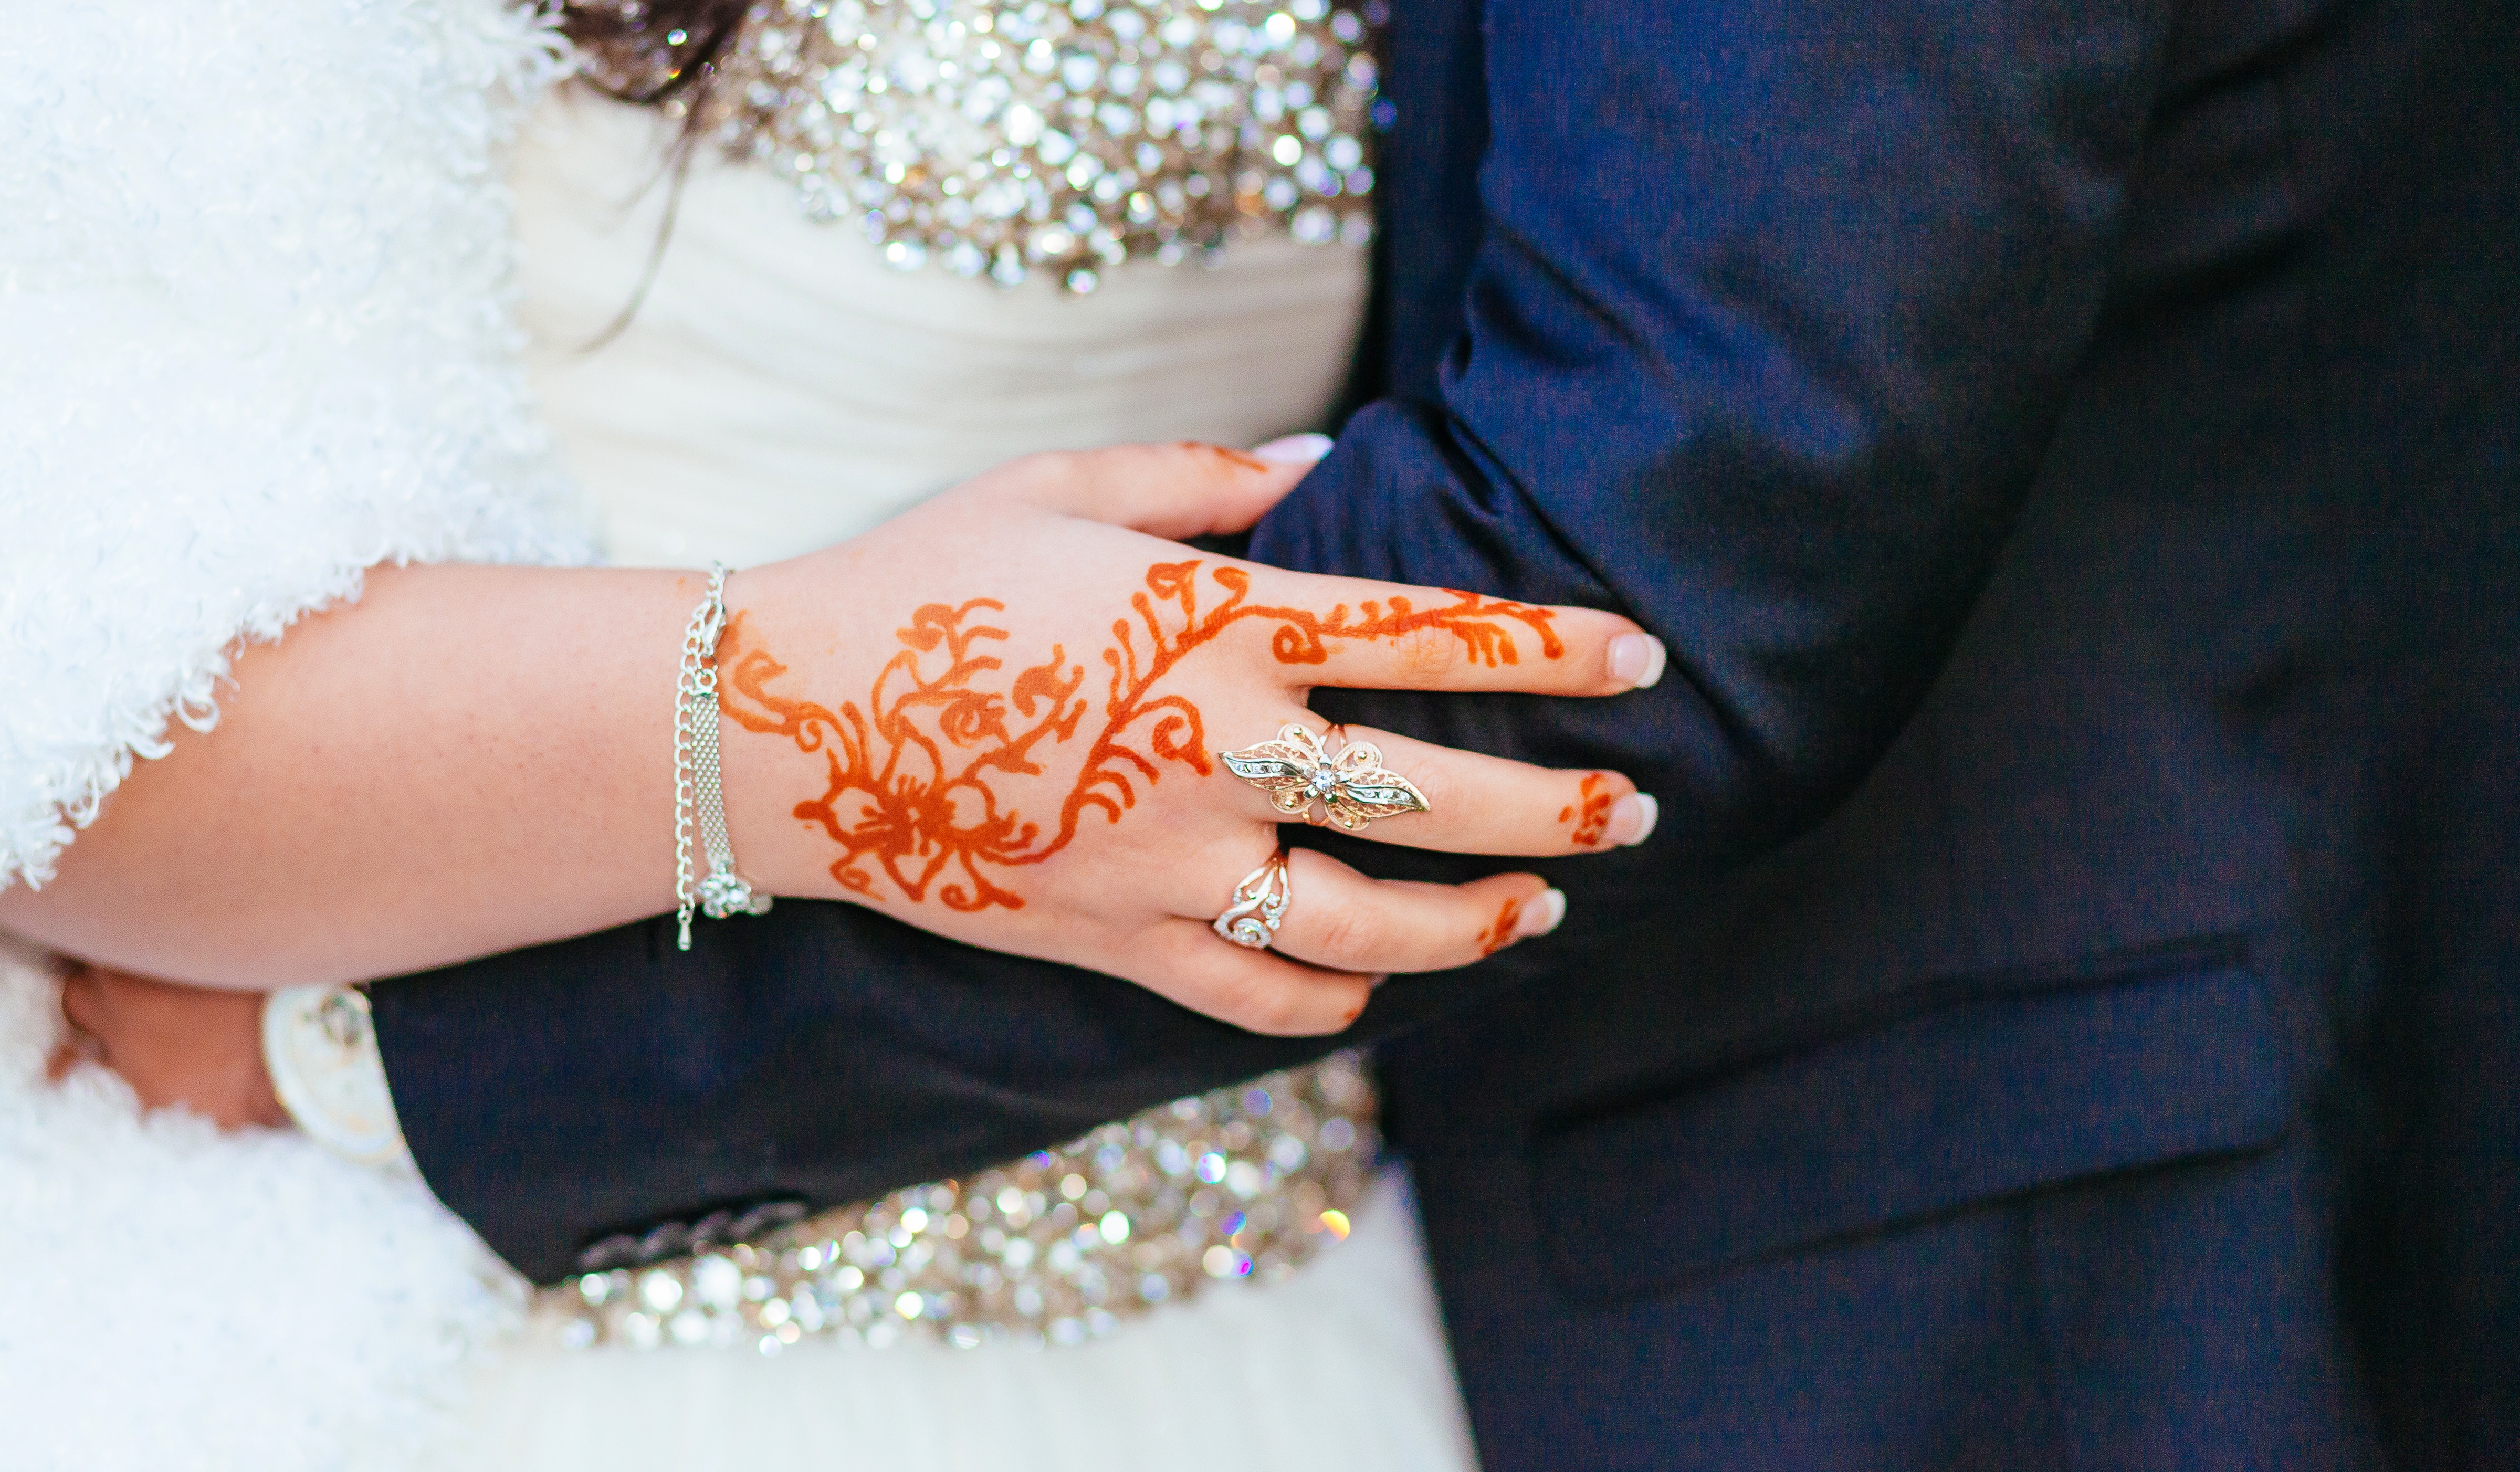 طقس وضع الحناء للعروس بمثابة حفل لتوديع العزوبية -  المصدر موقع Envato